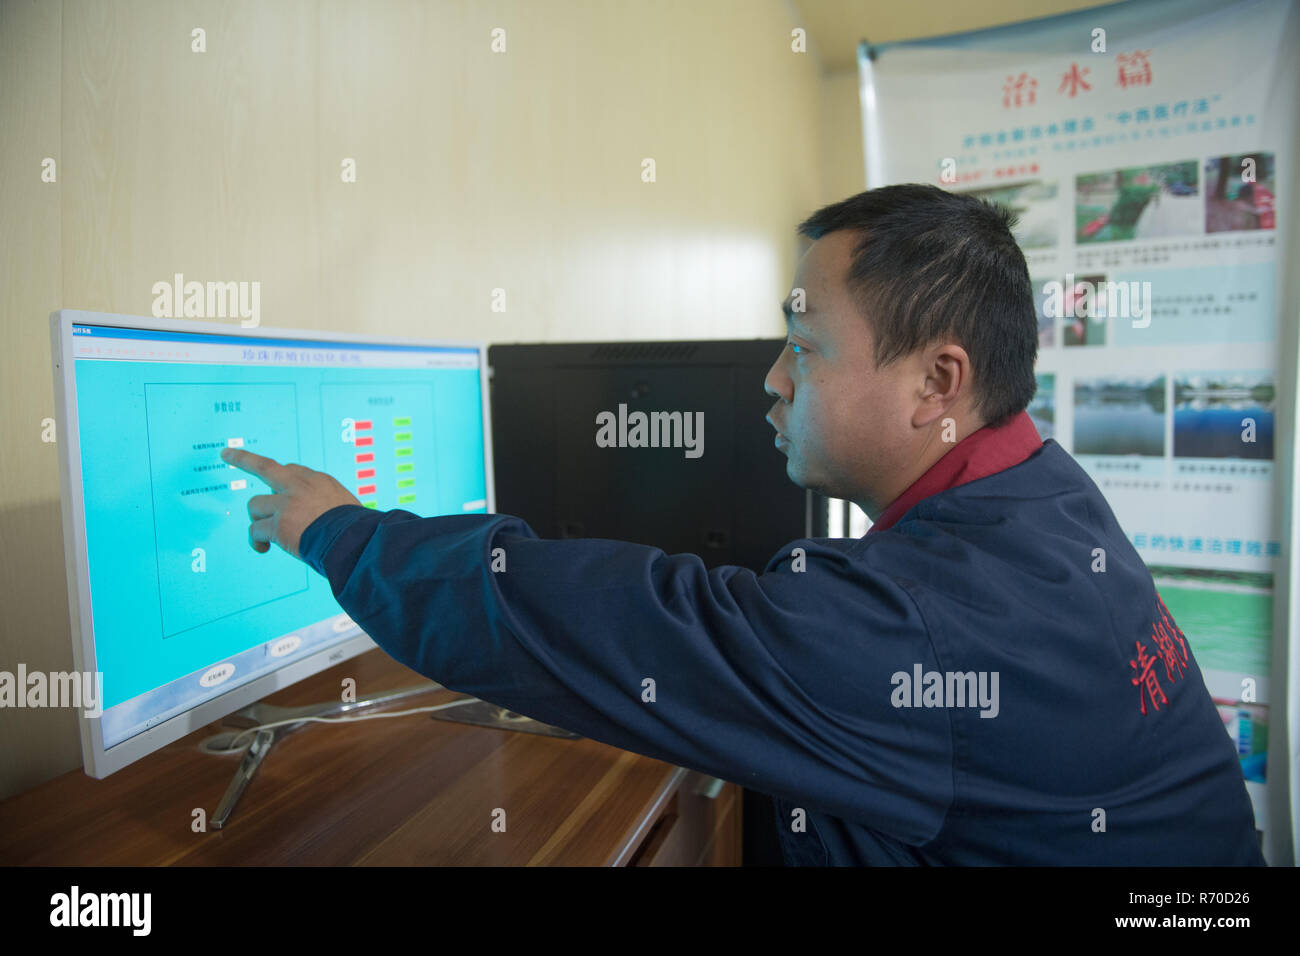 Zhuji, Zhuji City de la Chine de l'est la province de Zhejiang. 6e déc, 2018. Un travailleur présente le système d'exploitation automatique de la culture des perles de Shanxiahu Shanxiahu Ville, Village de Zhuji City de l'est de la Chine dans la province du Zhejiang, le 6 décembre 2018. L'industrie perlière dans Zhuji a amélioré son mode de développement de la culture de l'eau polluée à l'eau potable à travers la culture des moyens tels que l'association Culture de poissons et d'huîtres, de traitement de l'eau de la queue. Il existe aujourd'hui environ 4 200 UM (environ 280 hectares) de perles cultivées dans Shanxiahu Ville. Credit : Weng Xinyang/Xinhua/Alamy Live News Banque D'Images